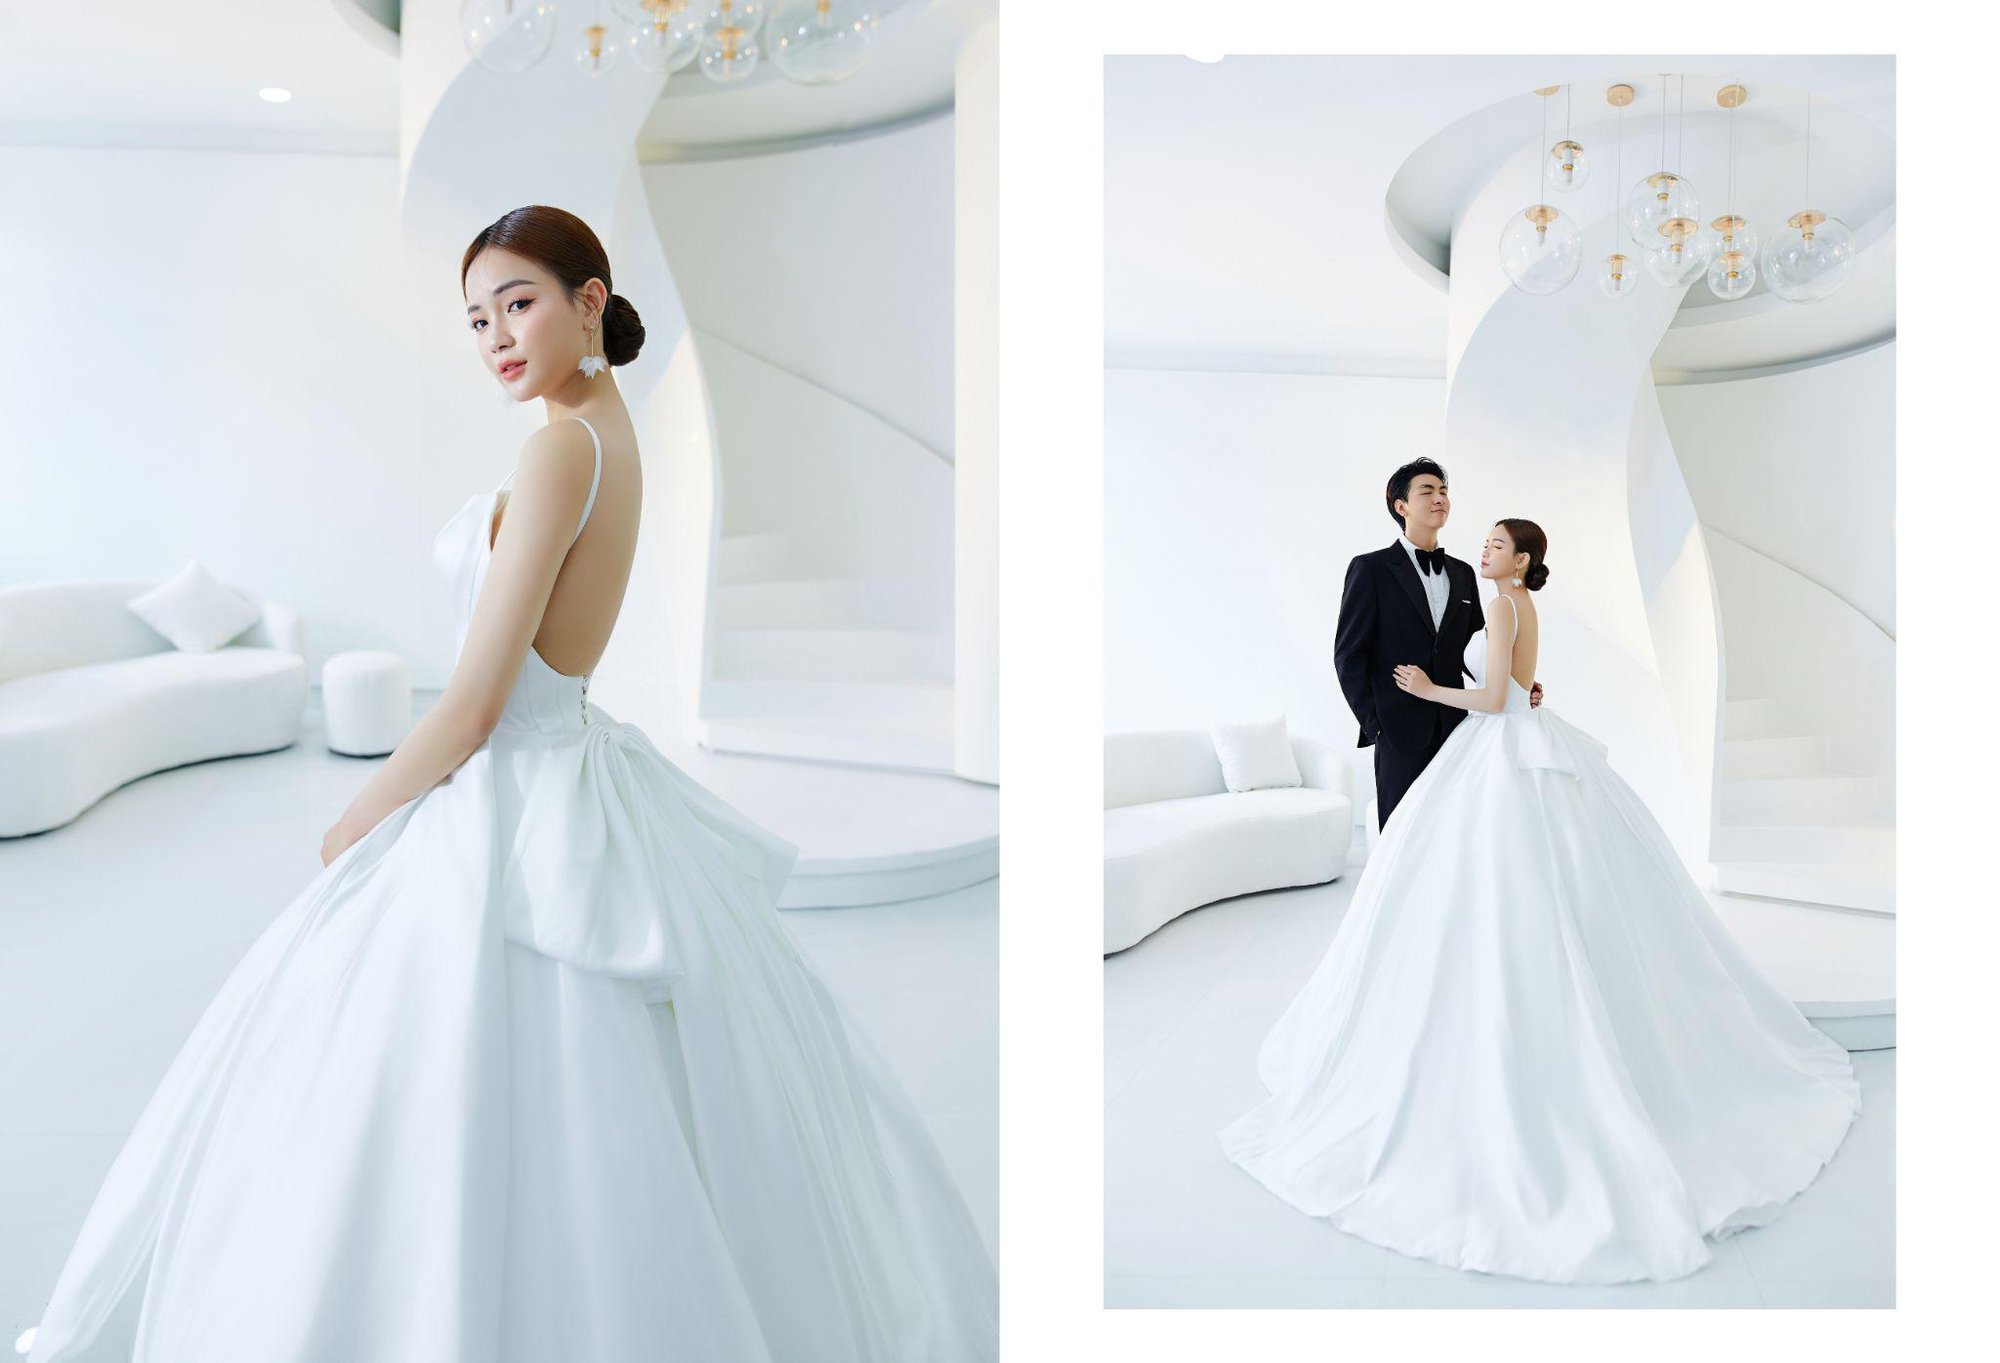 Tony Wedding ra mắt gói chụp ảnh cưới phong cách Hàn Quốc Easy-in-style - Ảnh 5.